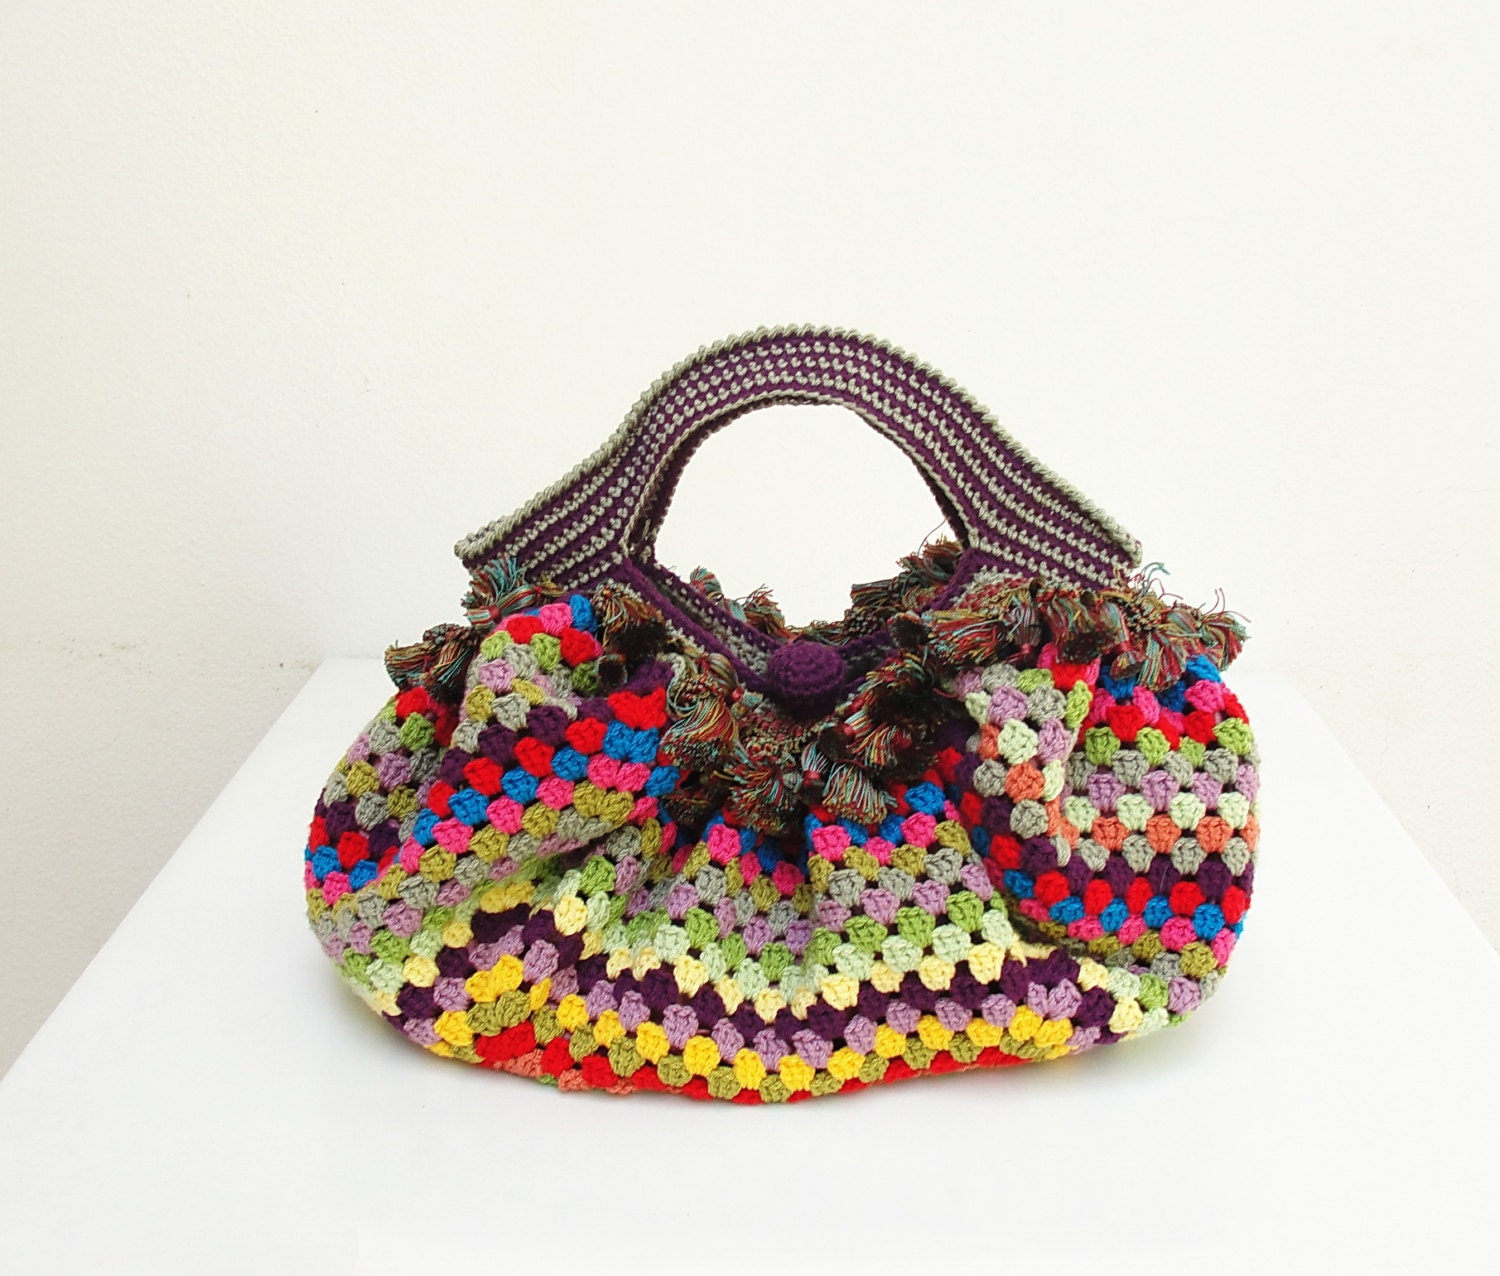          2021 Crochet bags photos